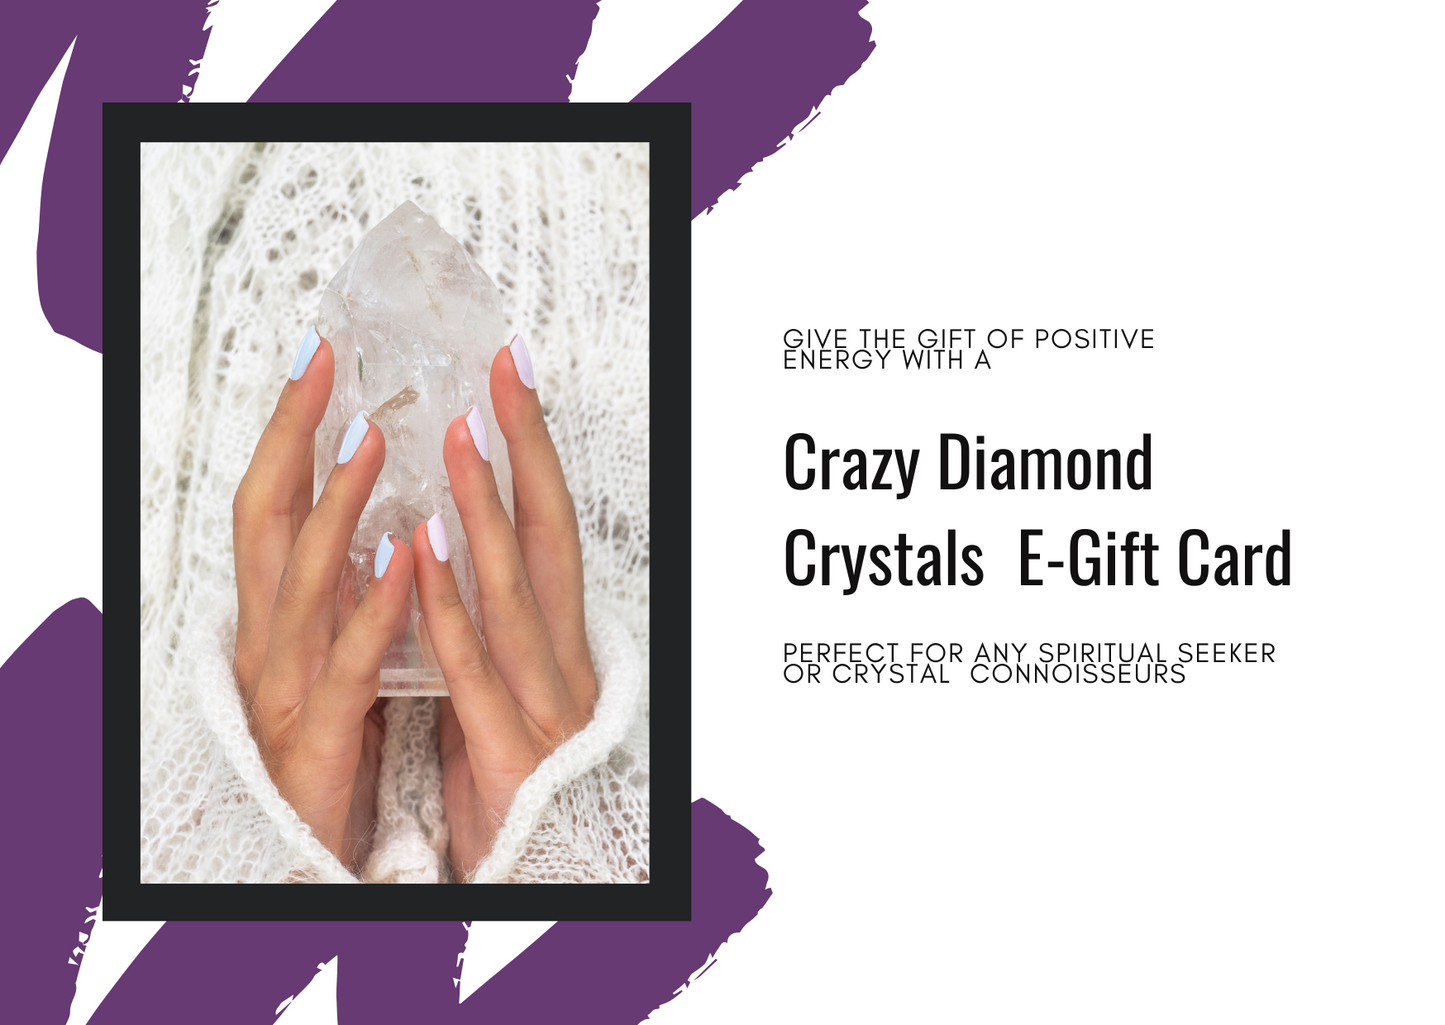 Crazy Diamond Crystals E-Gift Card